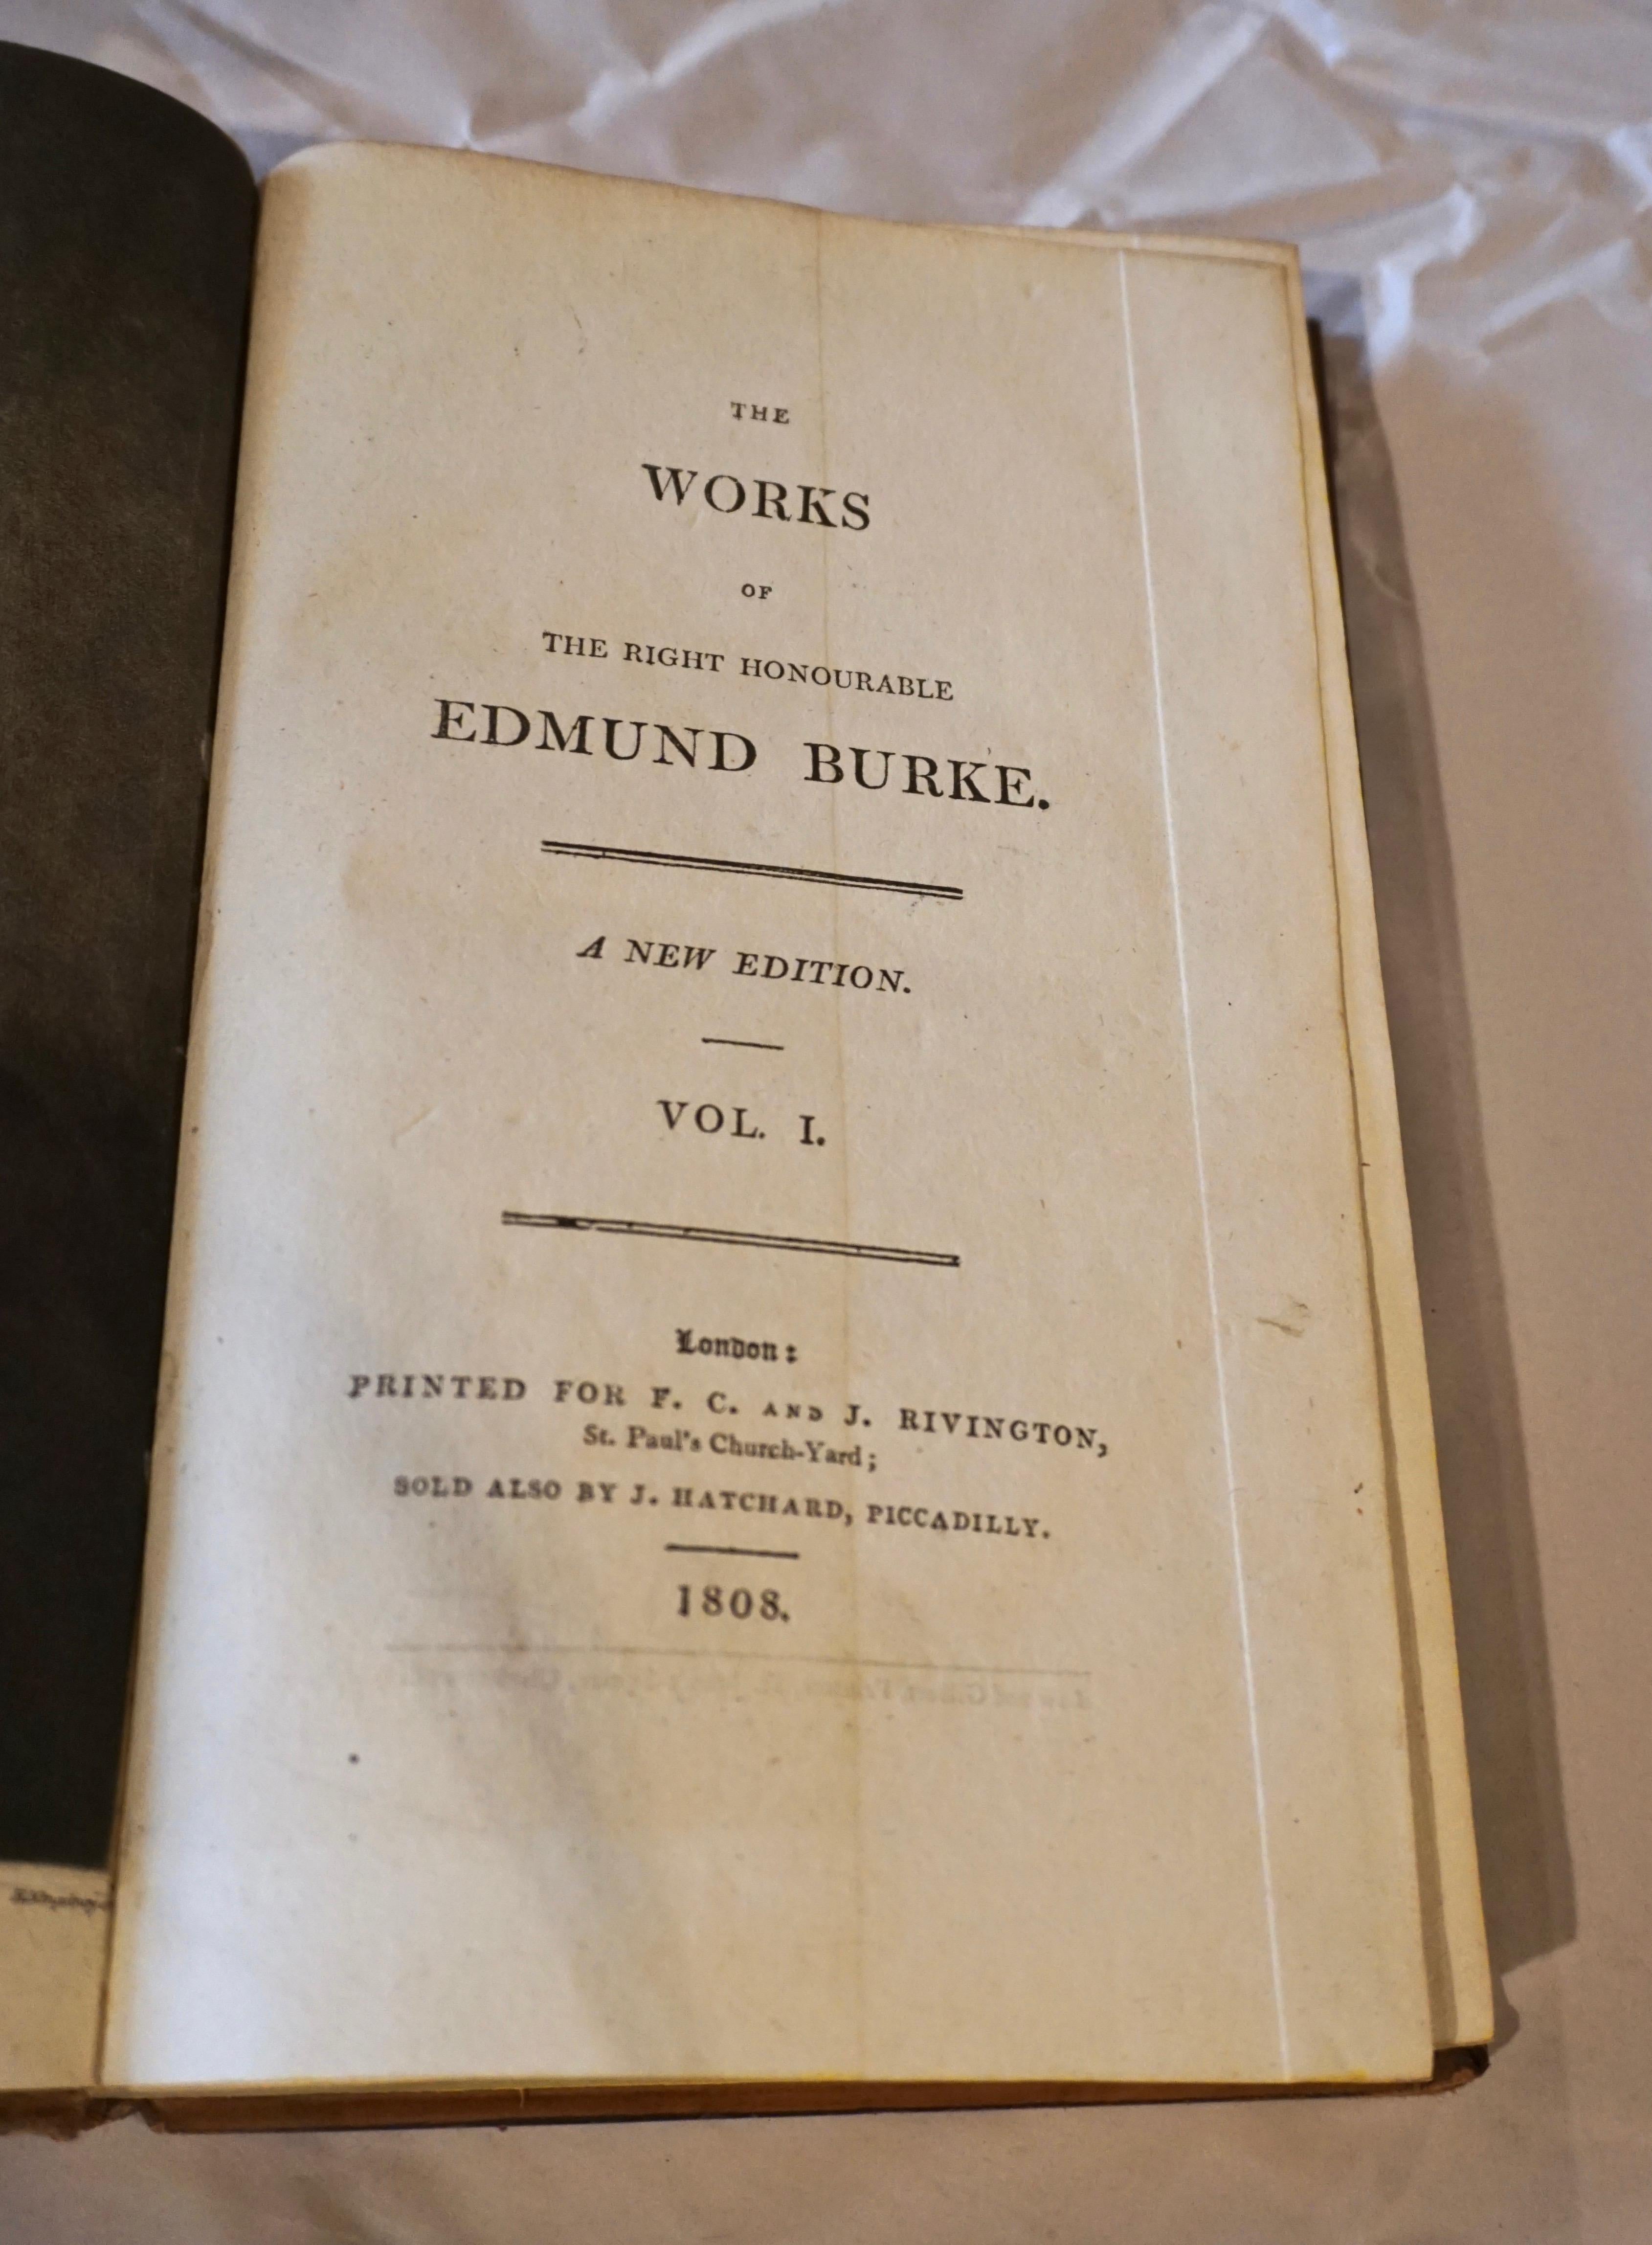 Cuir Les œuvres d'Edmund Burke dans huit volumes reliés en cuir publiés en 1808 en vente